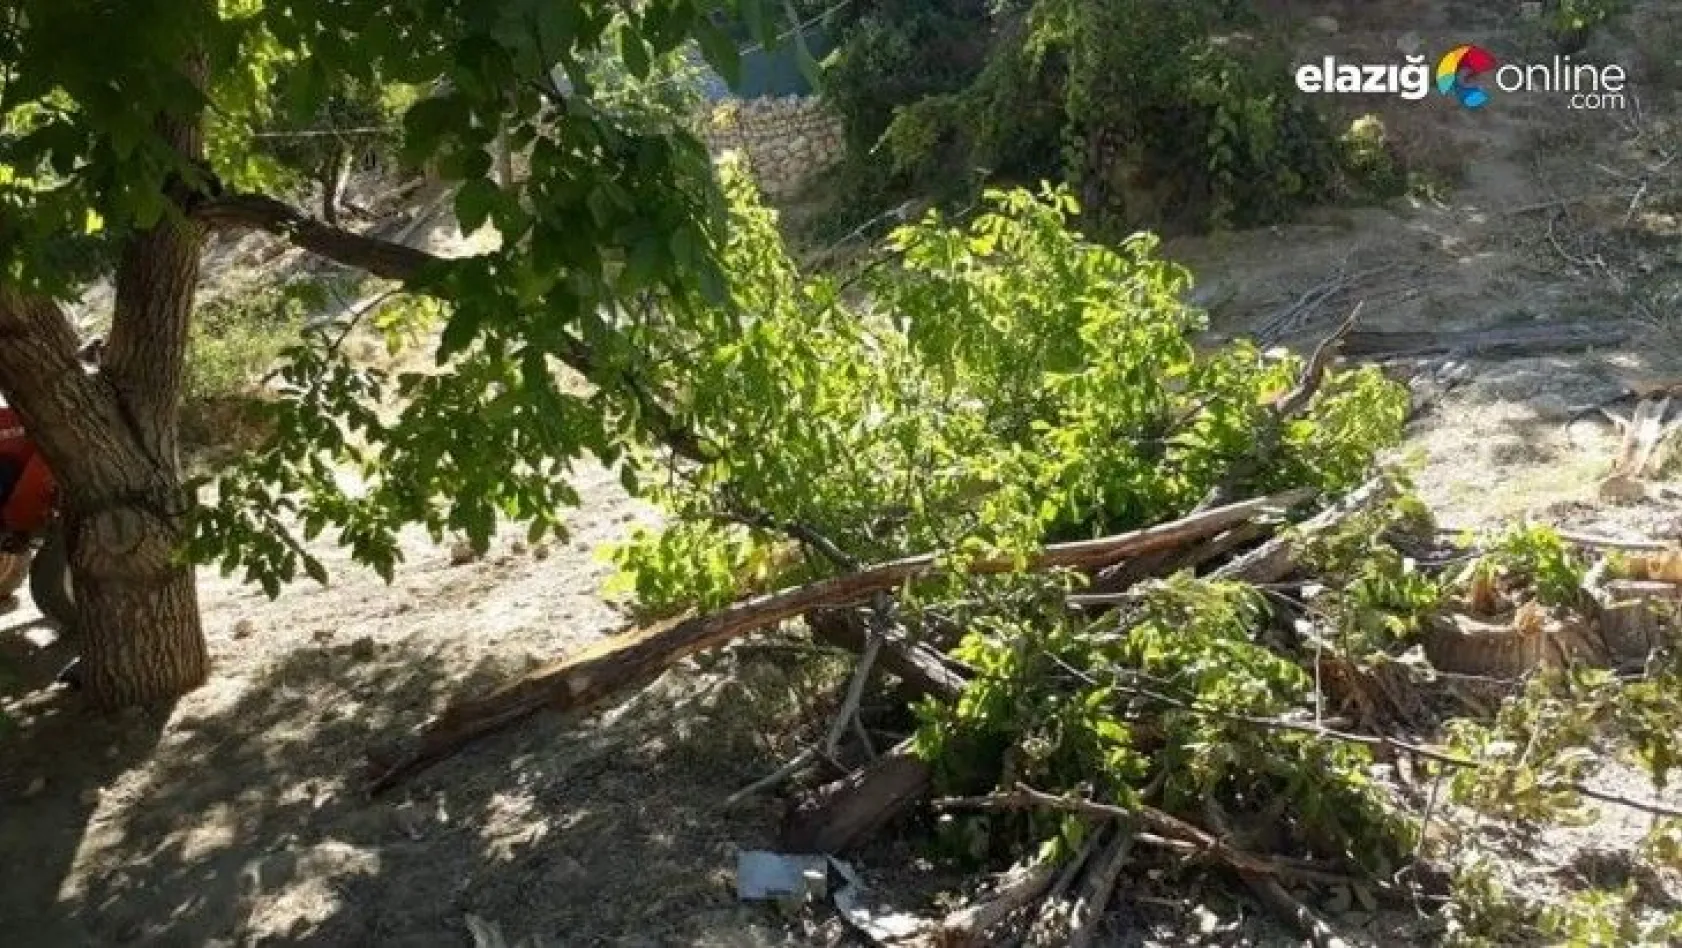 Kuvvetli rüzgar, elma bahçesine zarar verdi